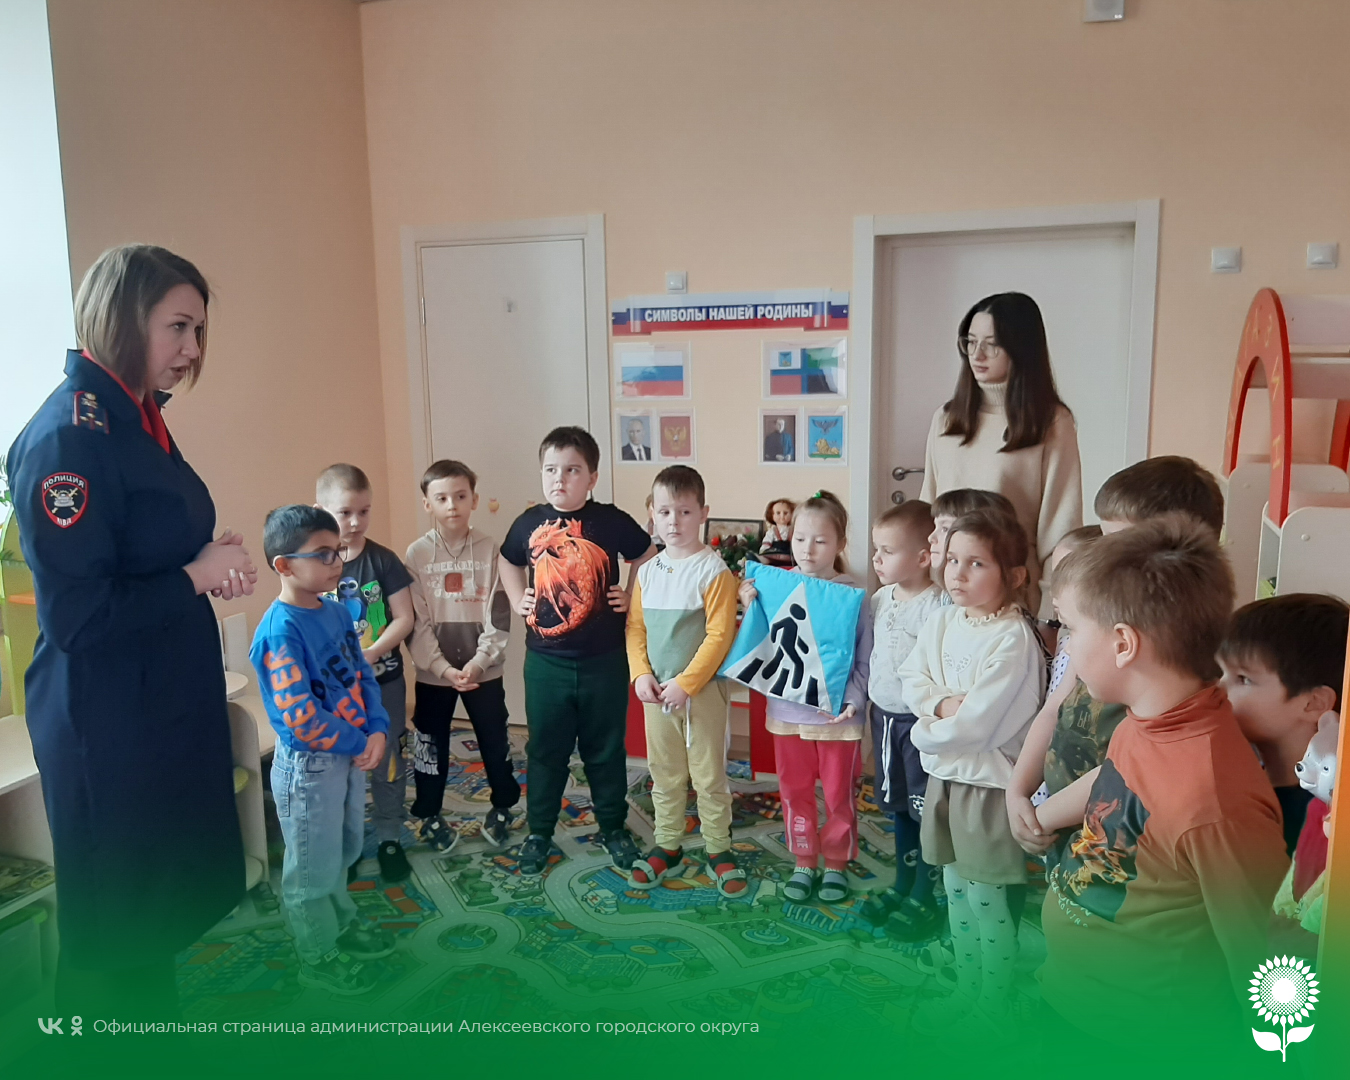 Сотрудник Госавтоинспекции ОМВД России по Алексеевскому городскому округу встретилась с воспитанниками детского сада № 10.